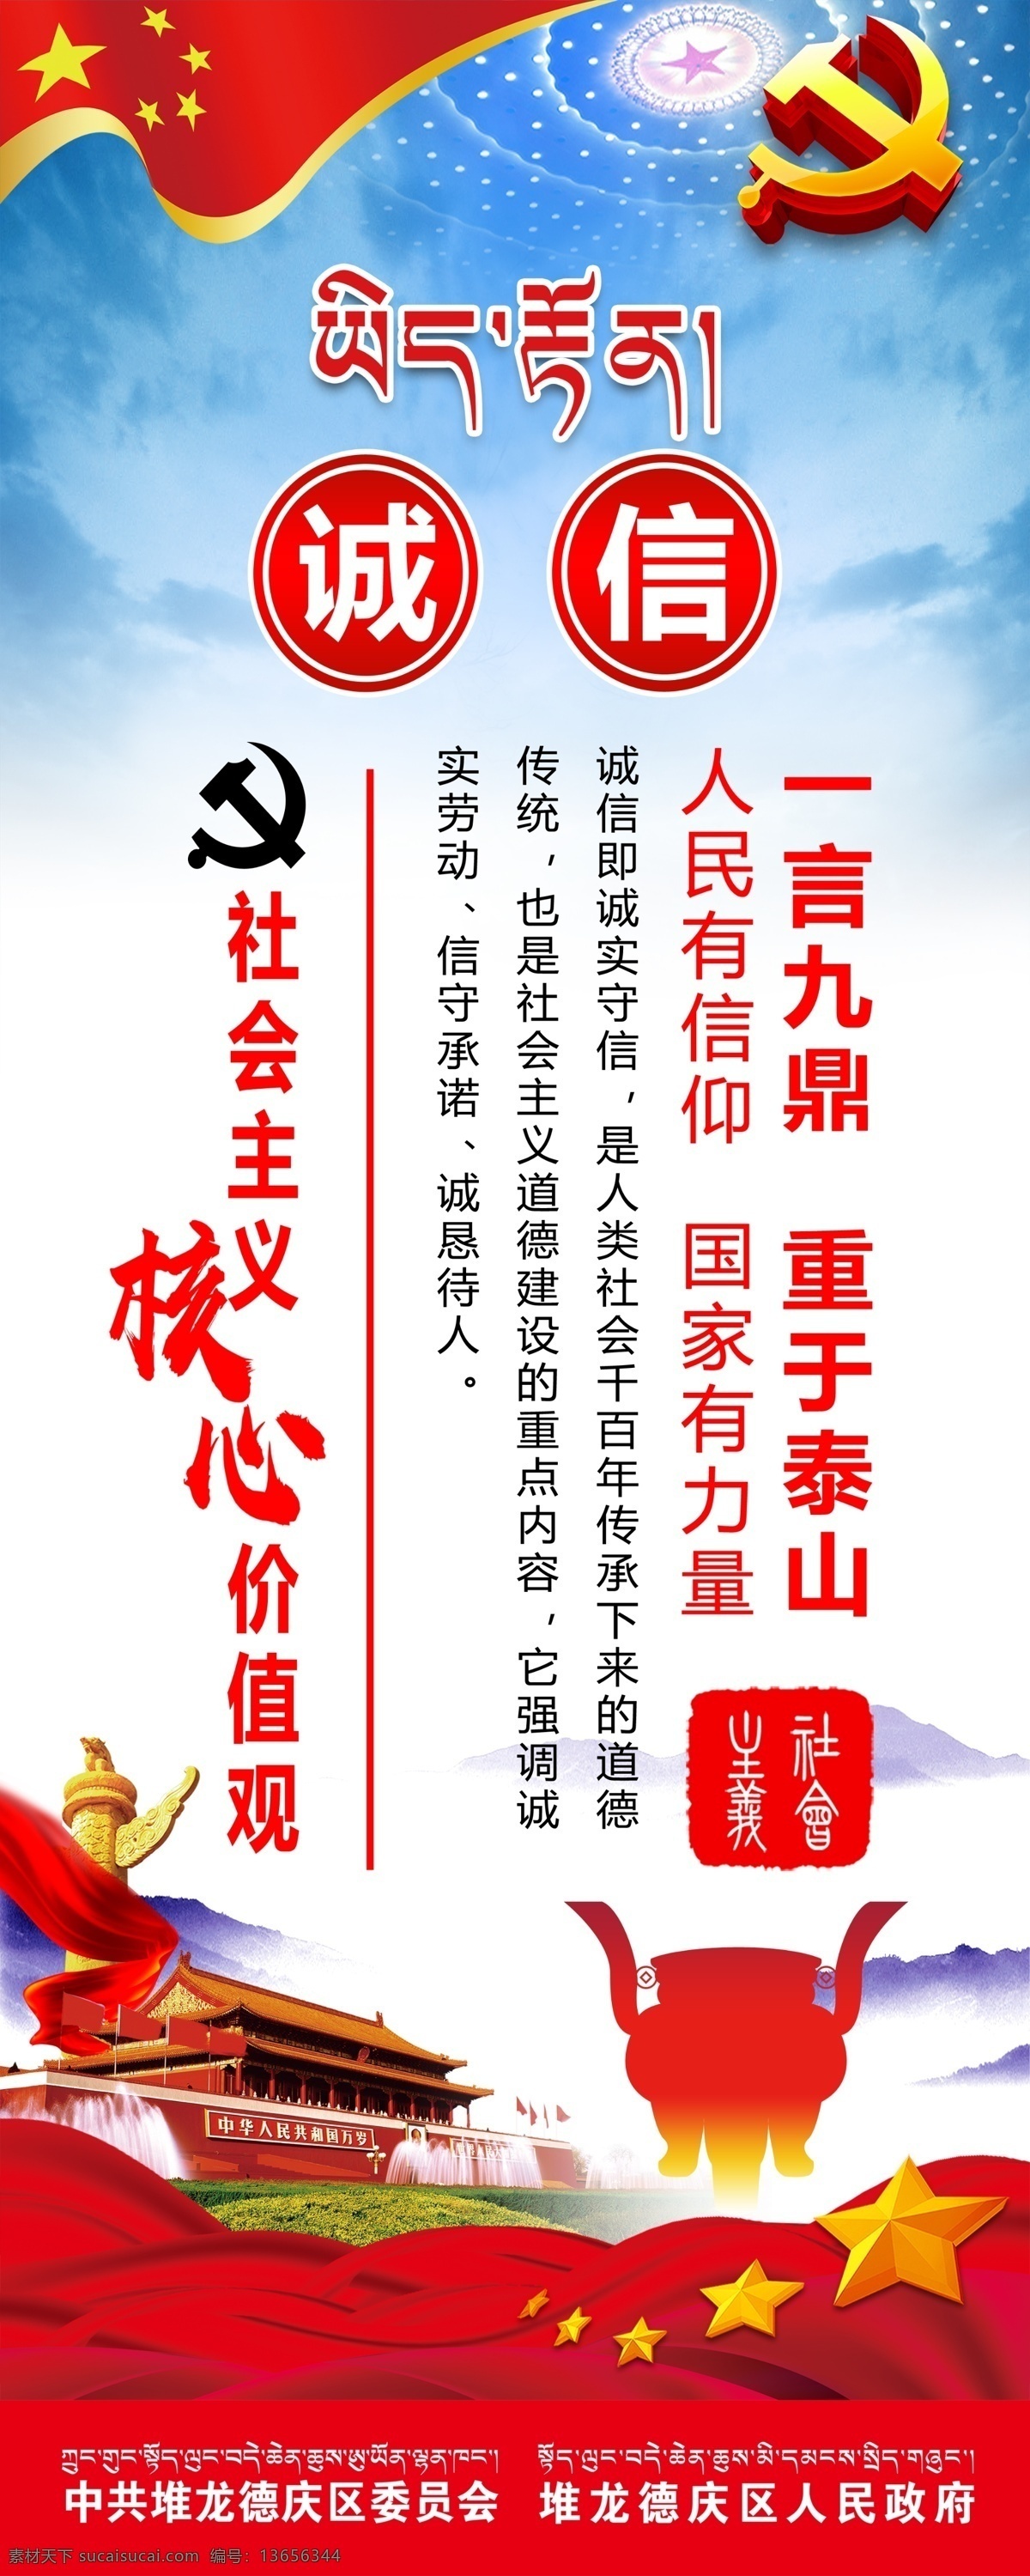 核心价值观 社会主义 诚信 一言九鼎 重于泰山 天安门 华表 党徵 价值观 海报 喷绘